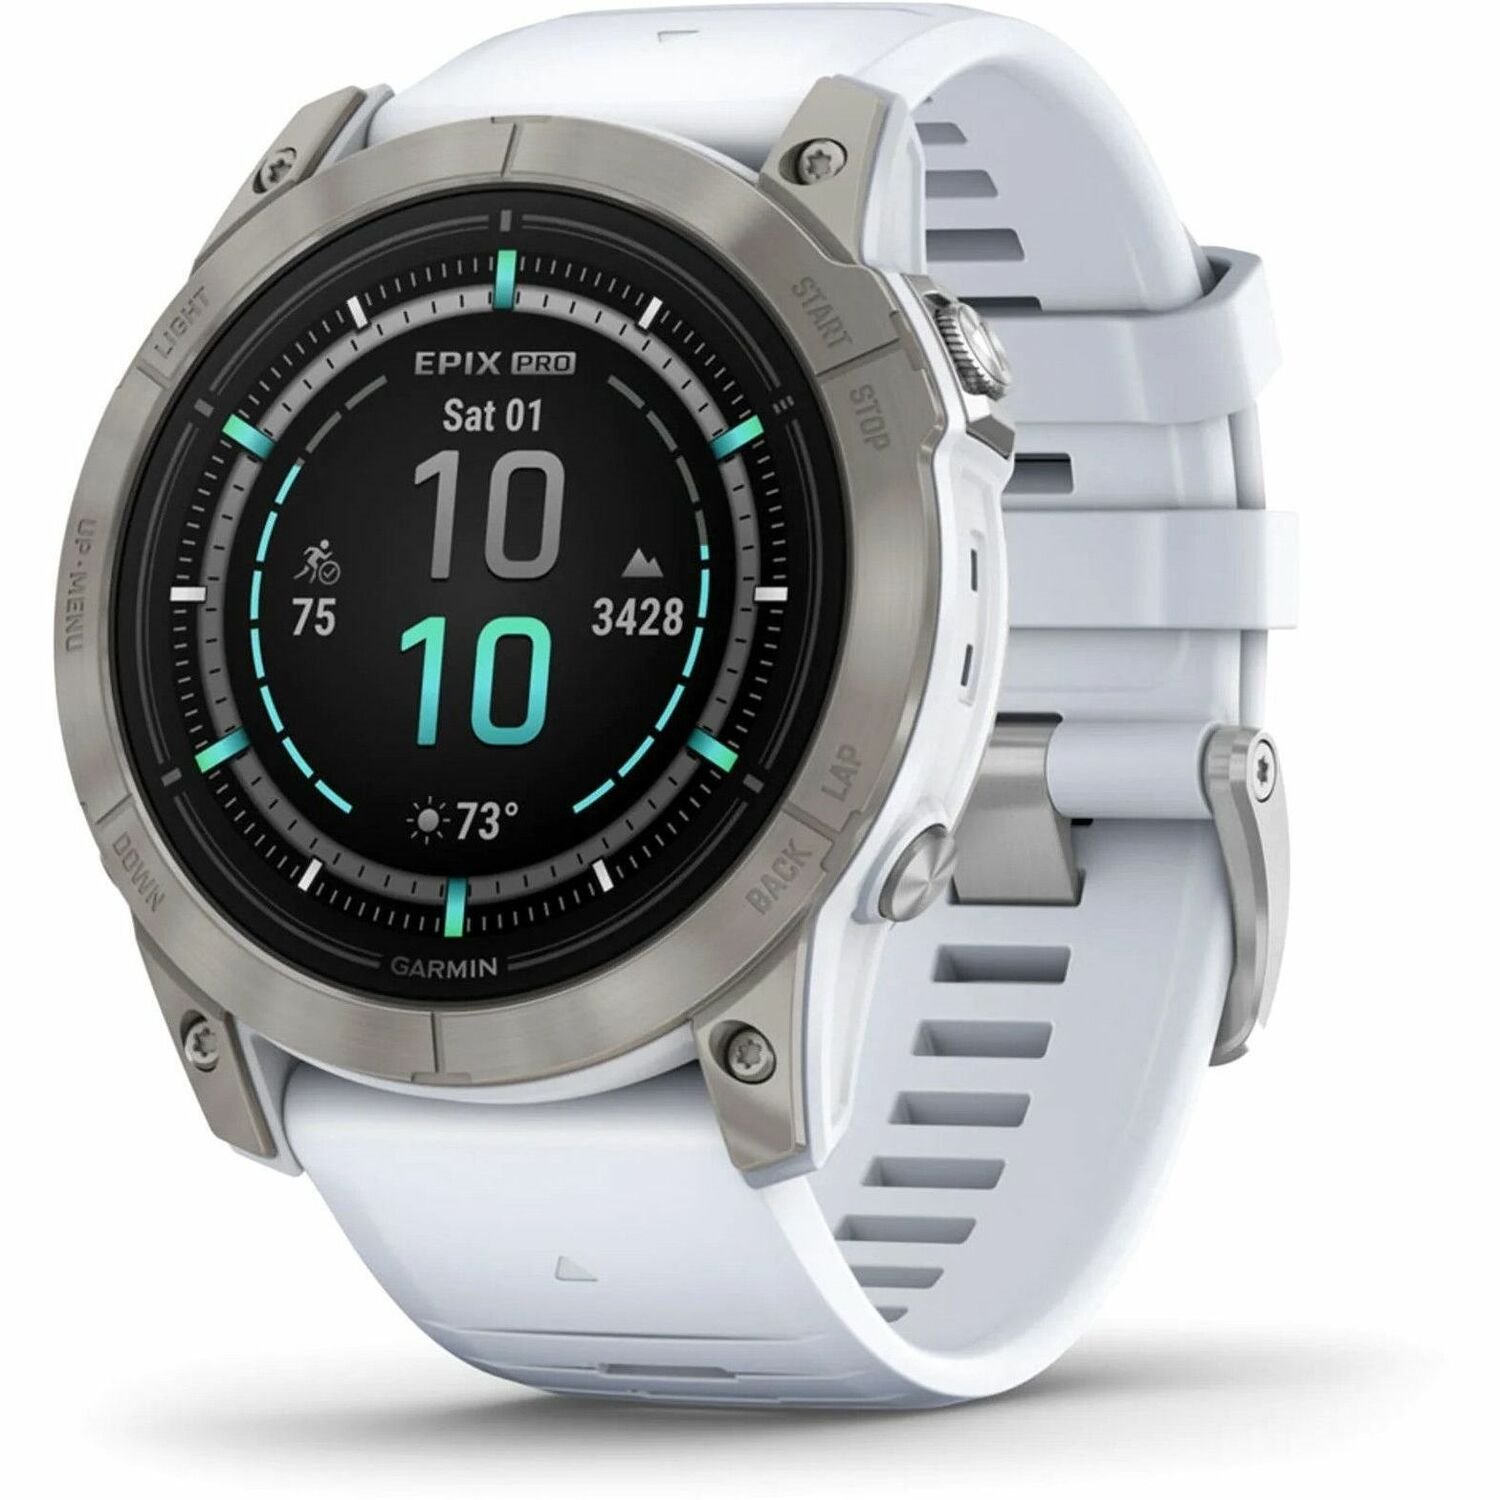 Garmin epix Pro (Gen 2) Smart Watch